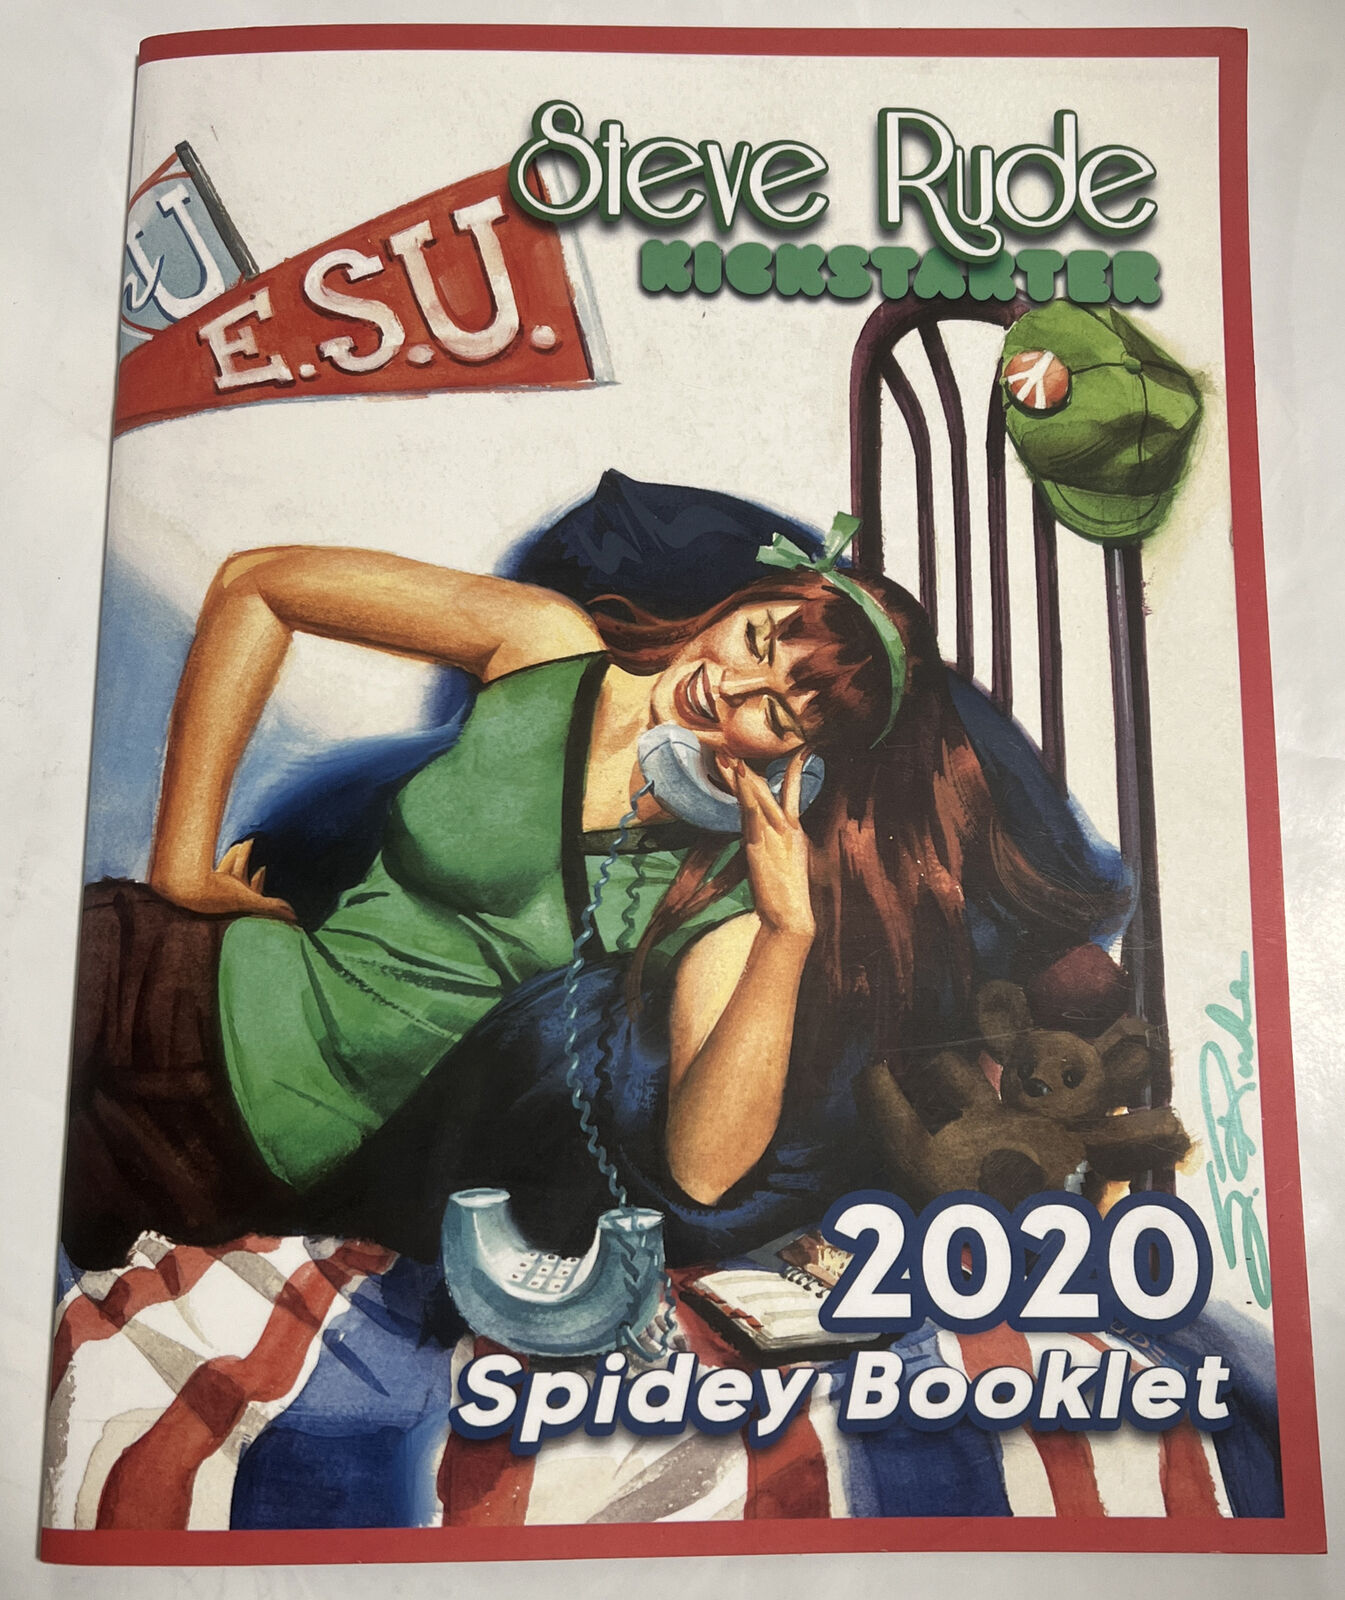 Steve Rude Kickstarter 2020 Spidey Booklet Signed